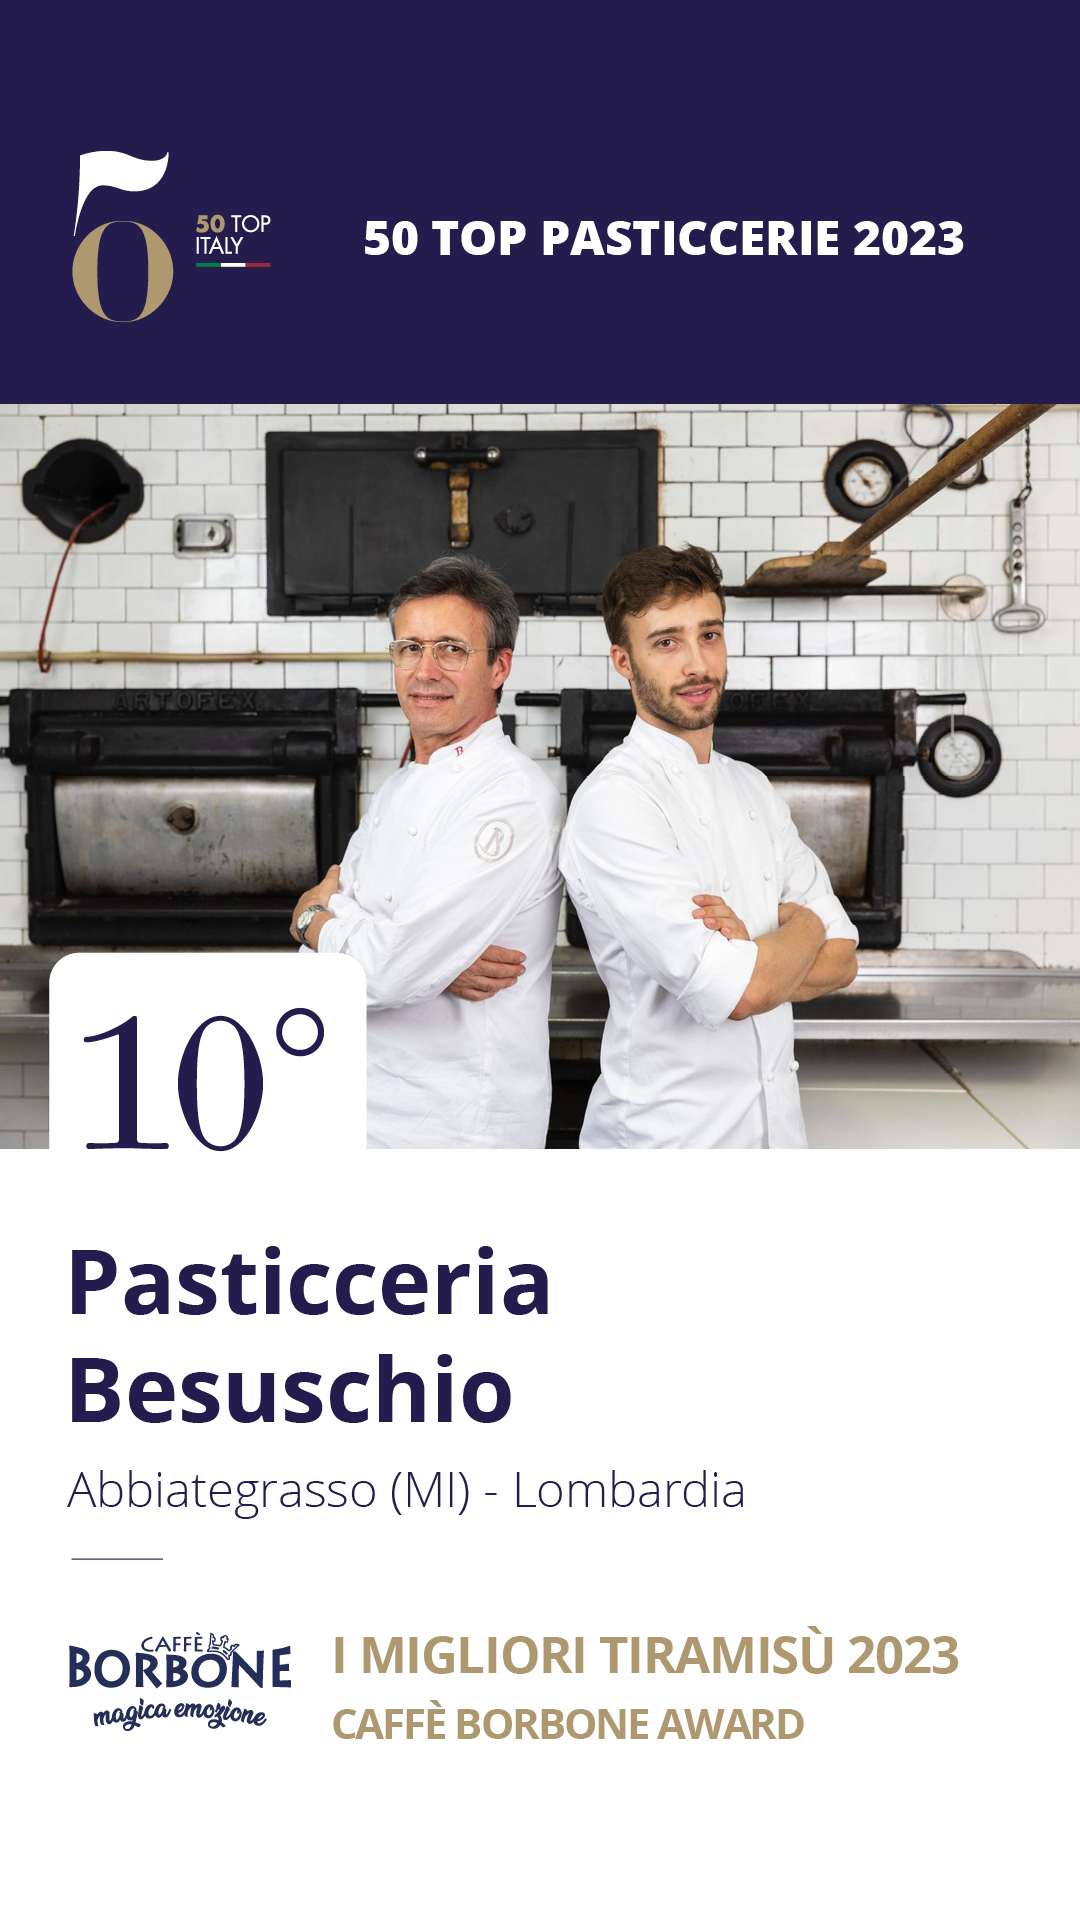 10. Pasticceria Besuschio - Abbiategrasso (MI), Lombardia